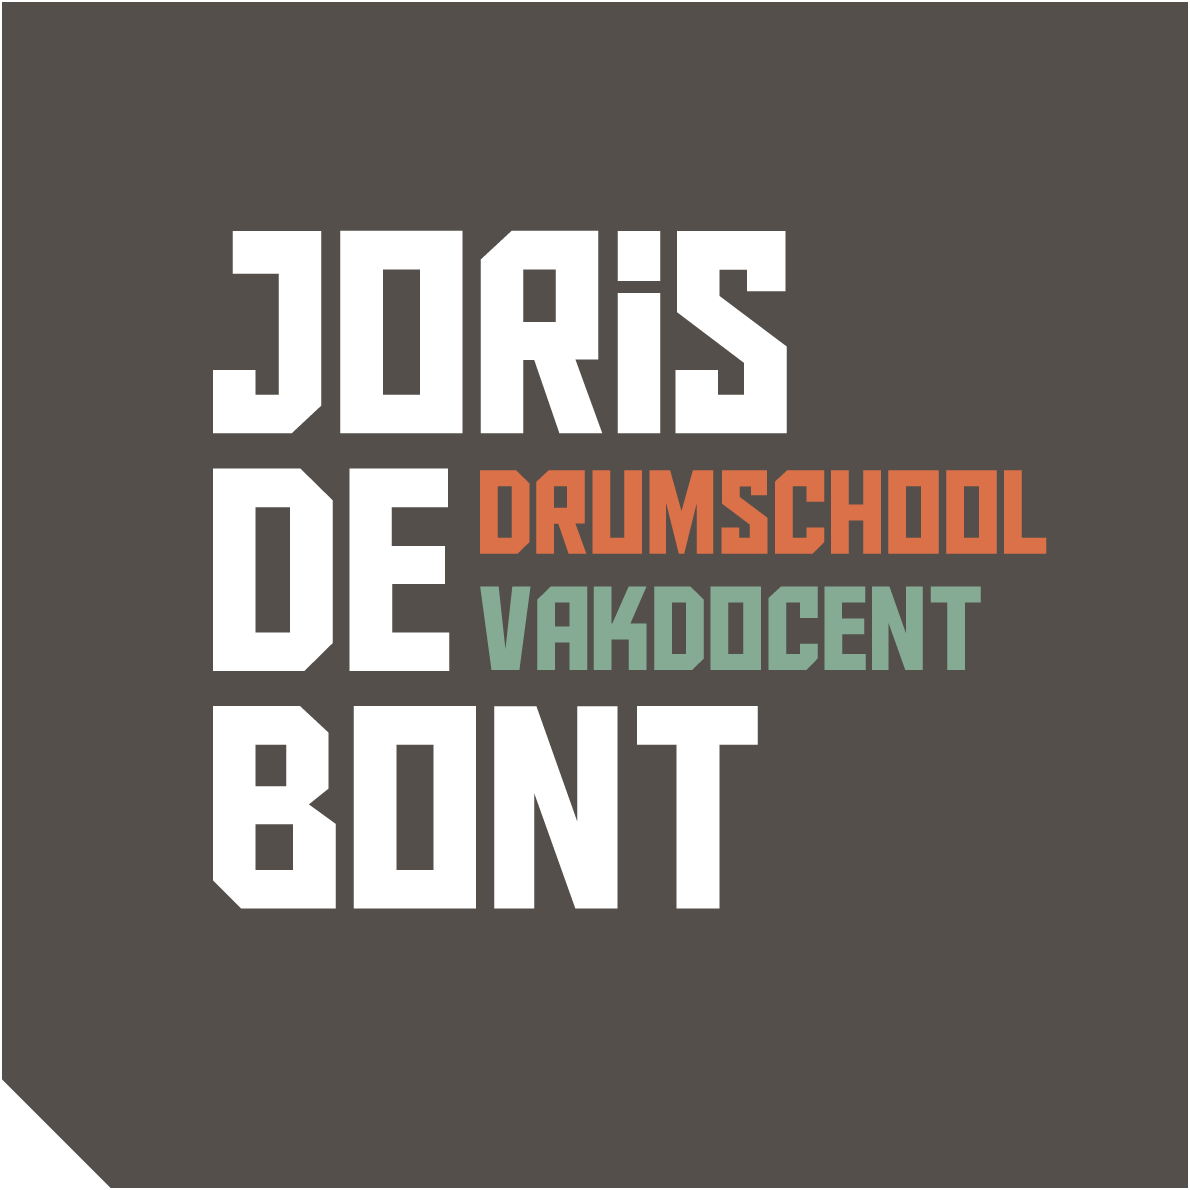 Drumschool Joris de Bont